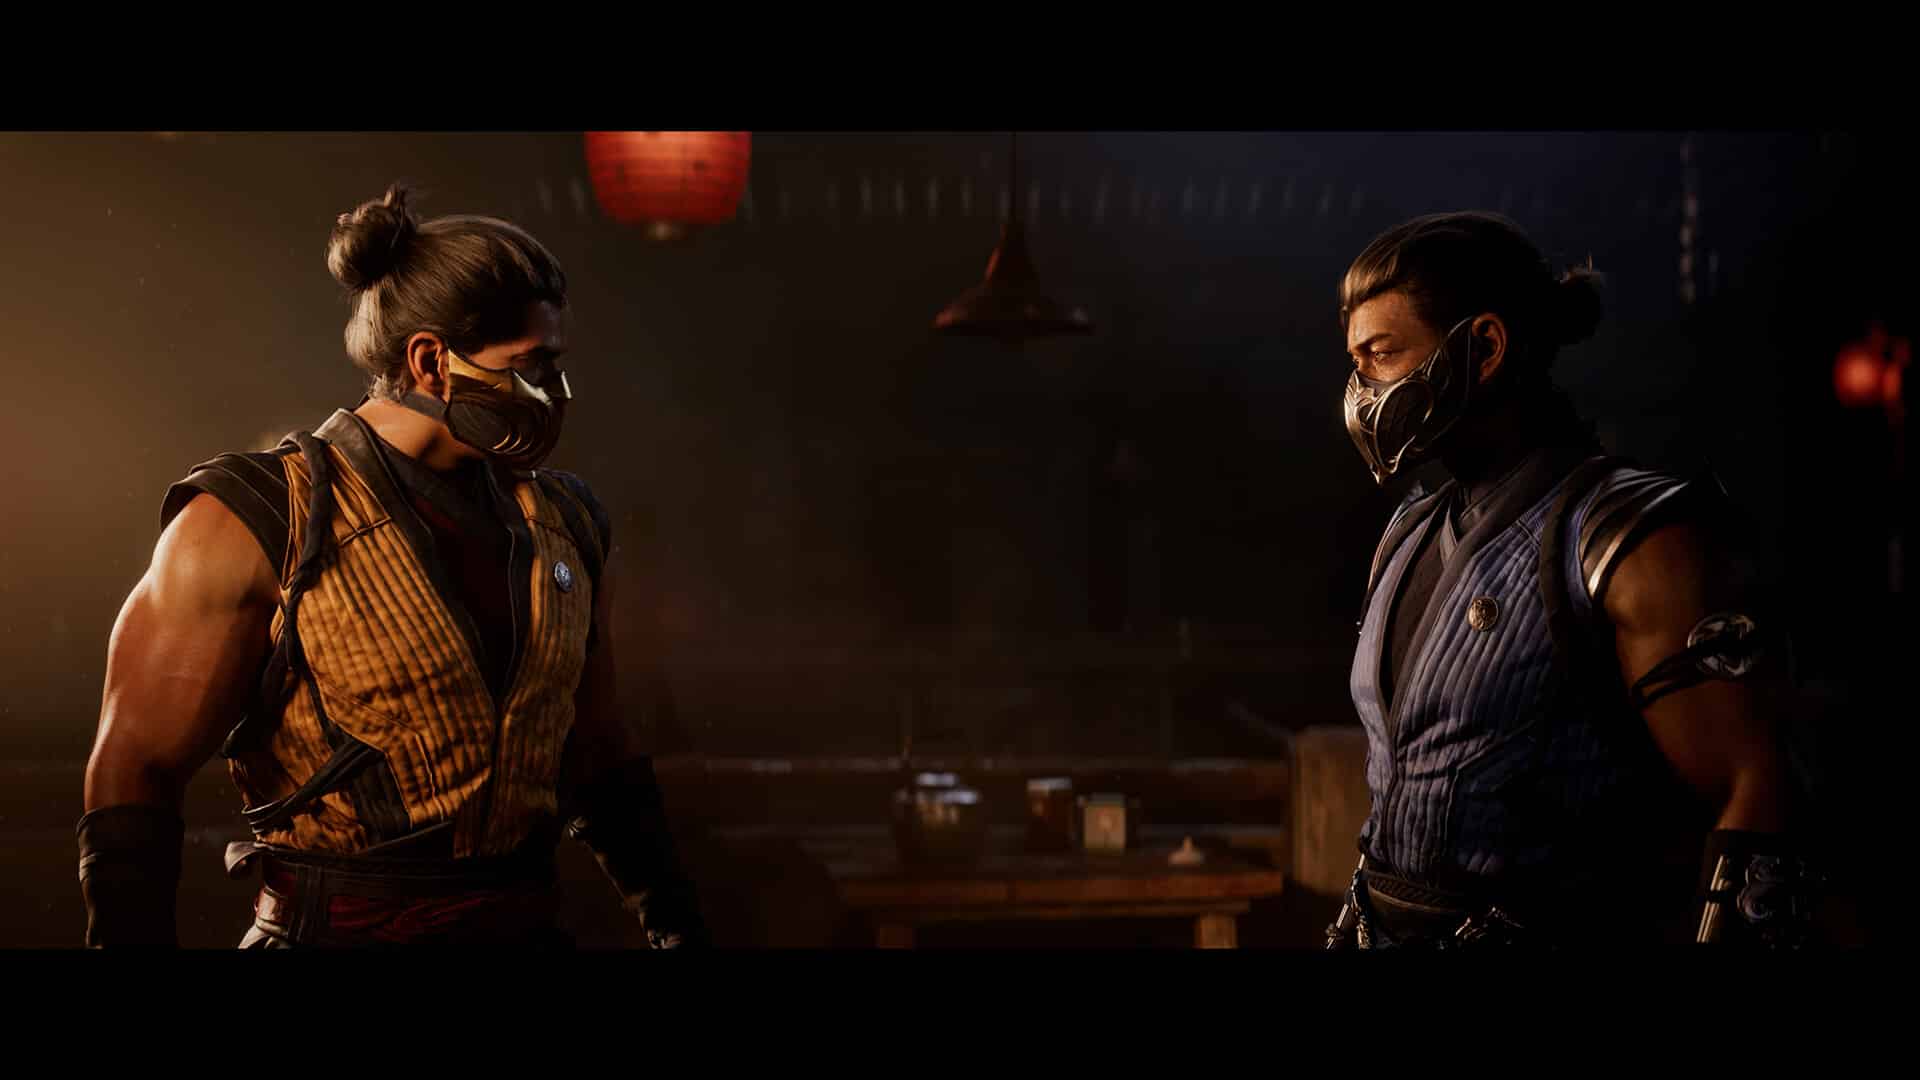 Mortal Kombat 1 Screenshot